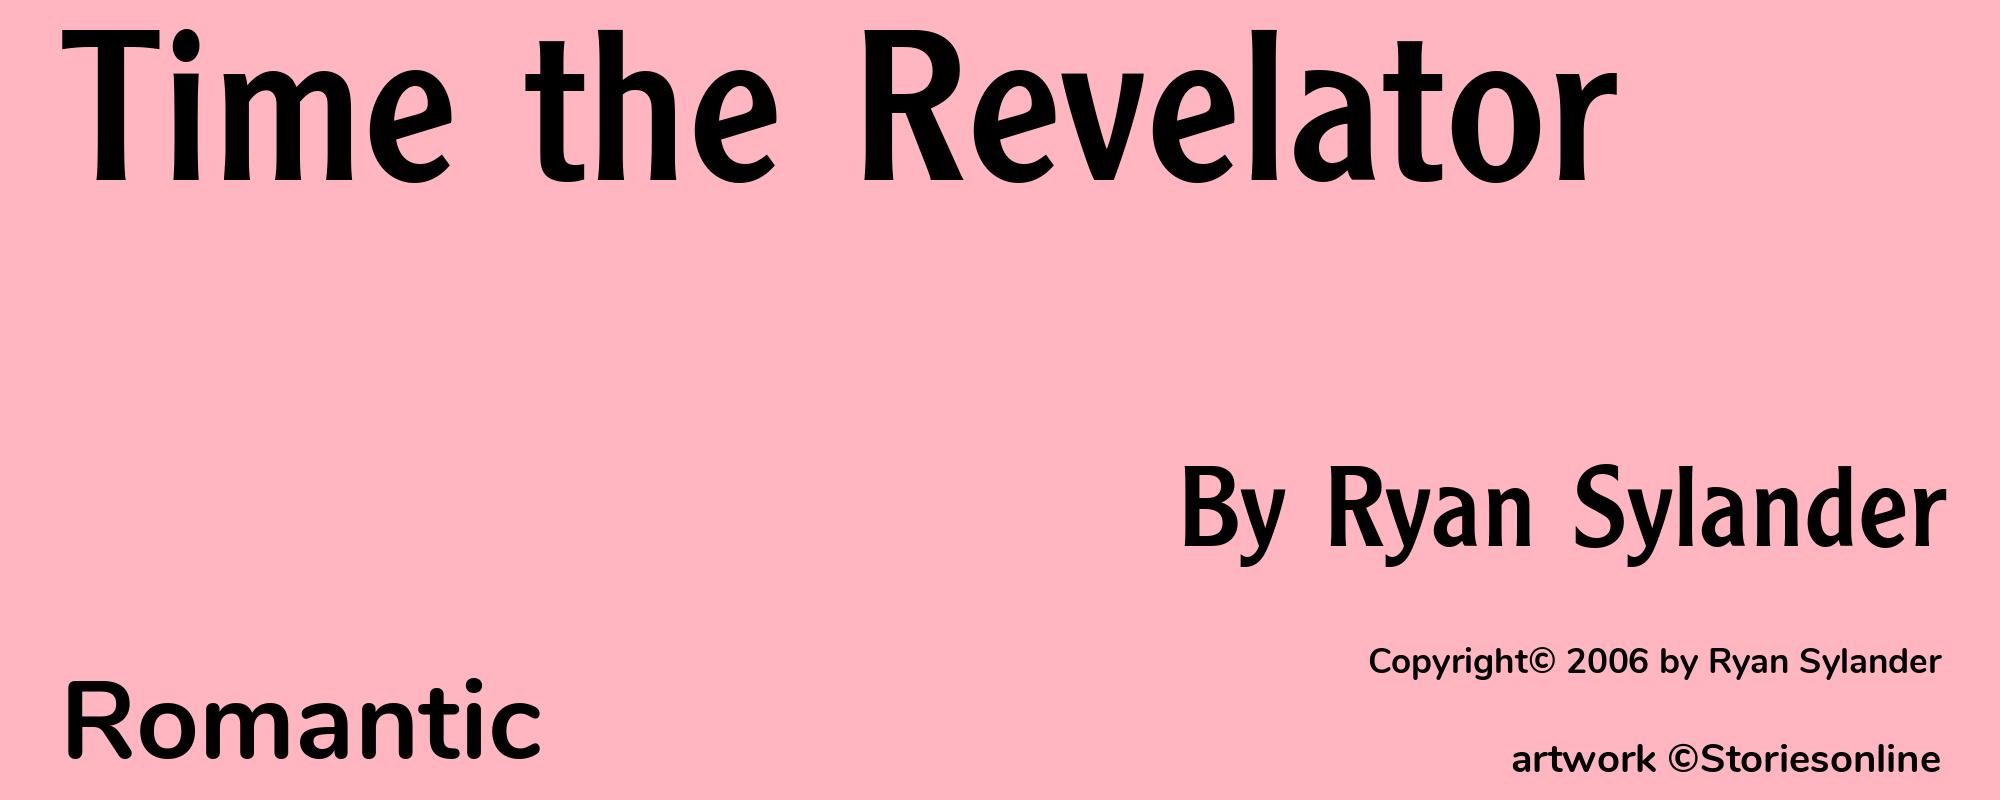 Time the Revelator - Cover